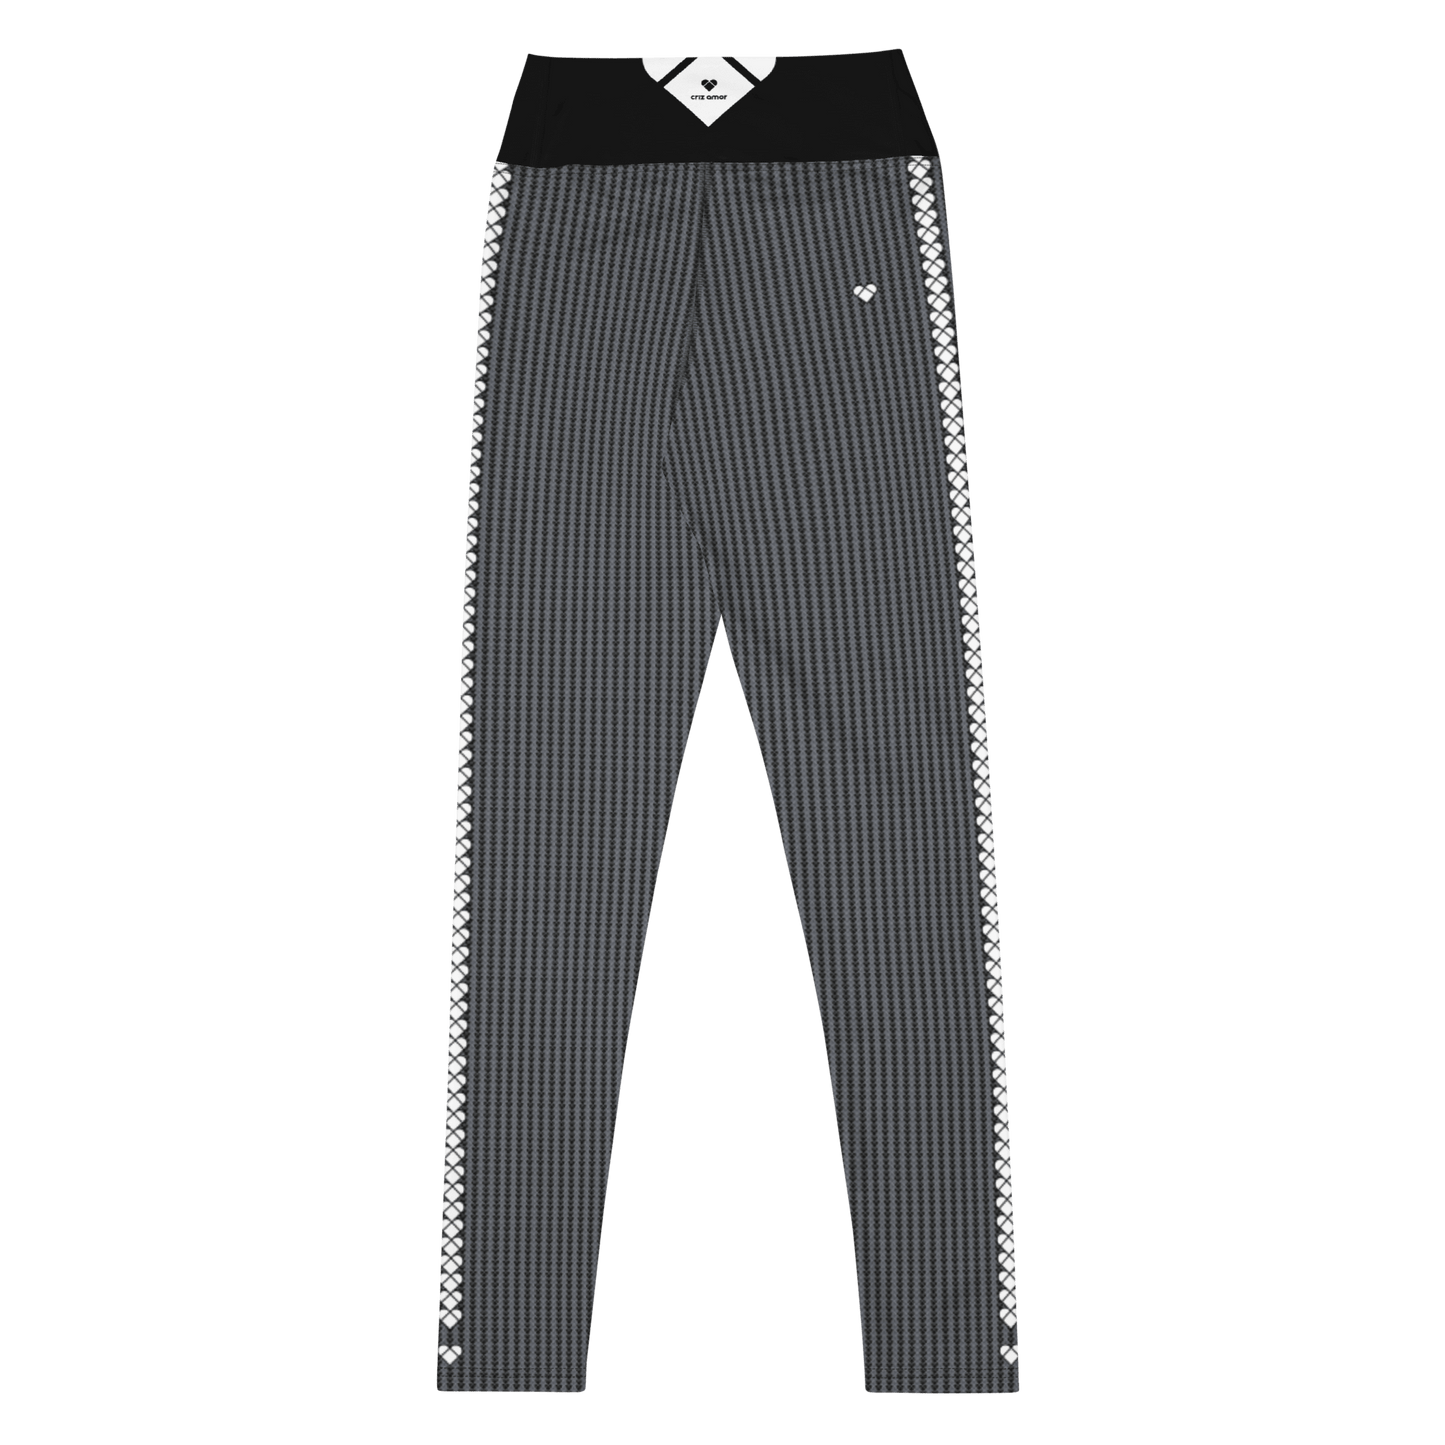 Limited Edition Lovogram Yoga leggings for Women